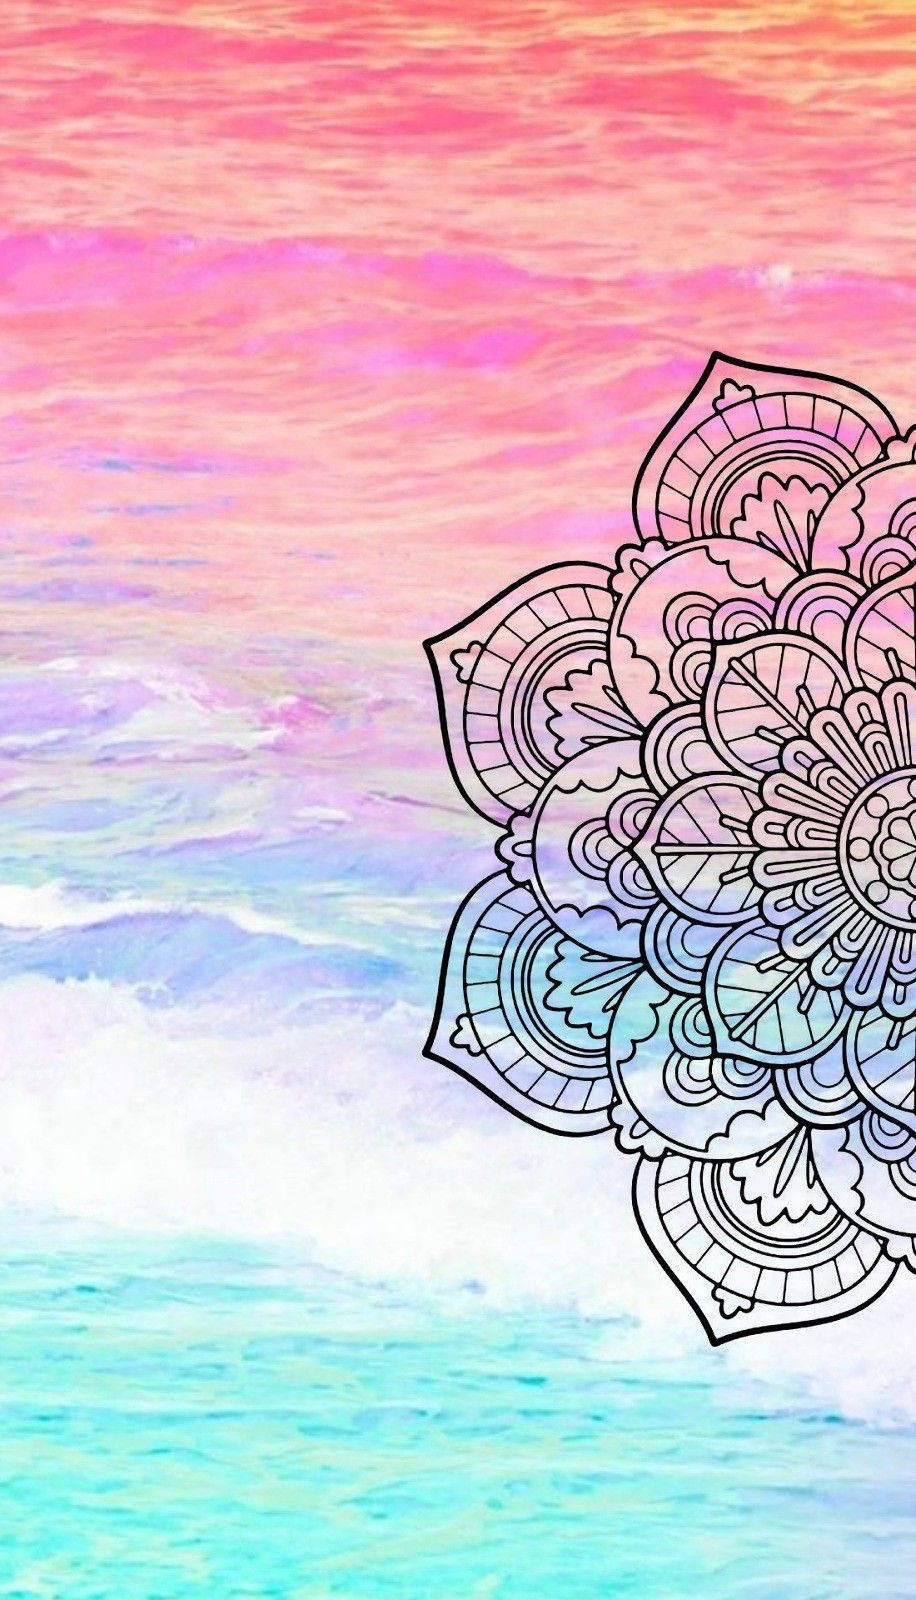 Mandala On Pink Background. Background